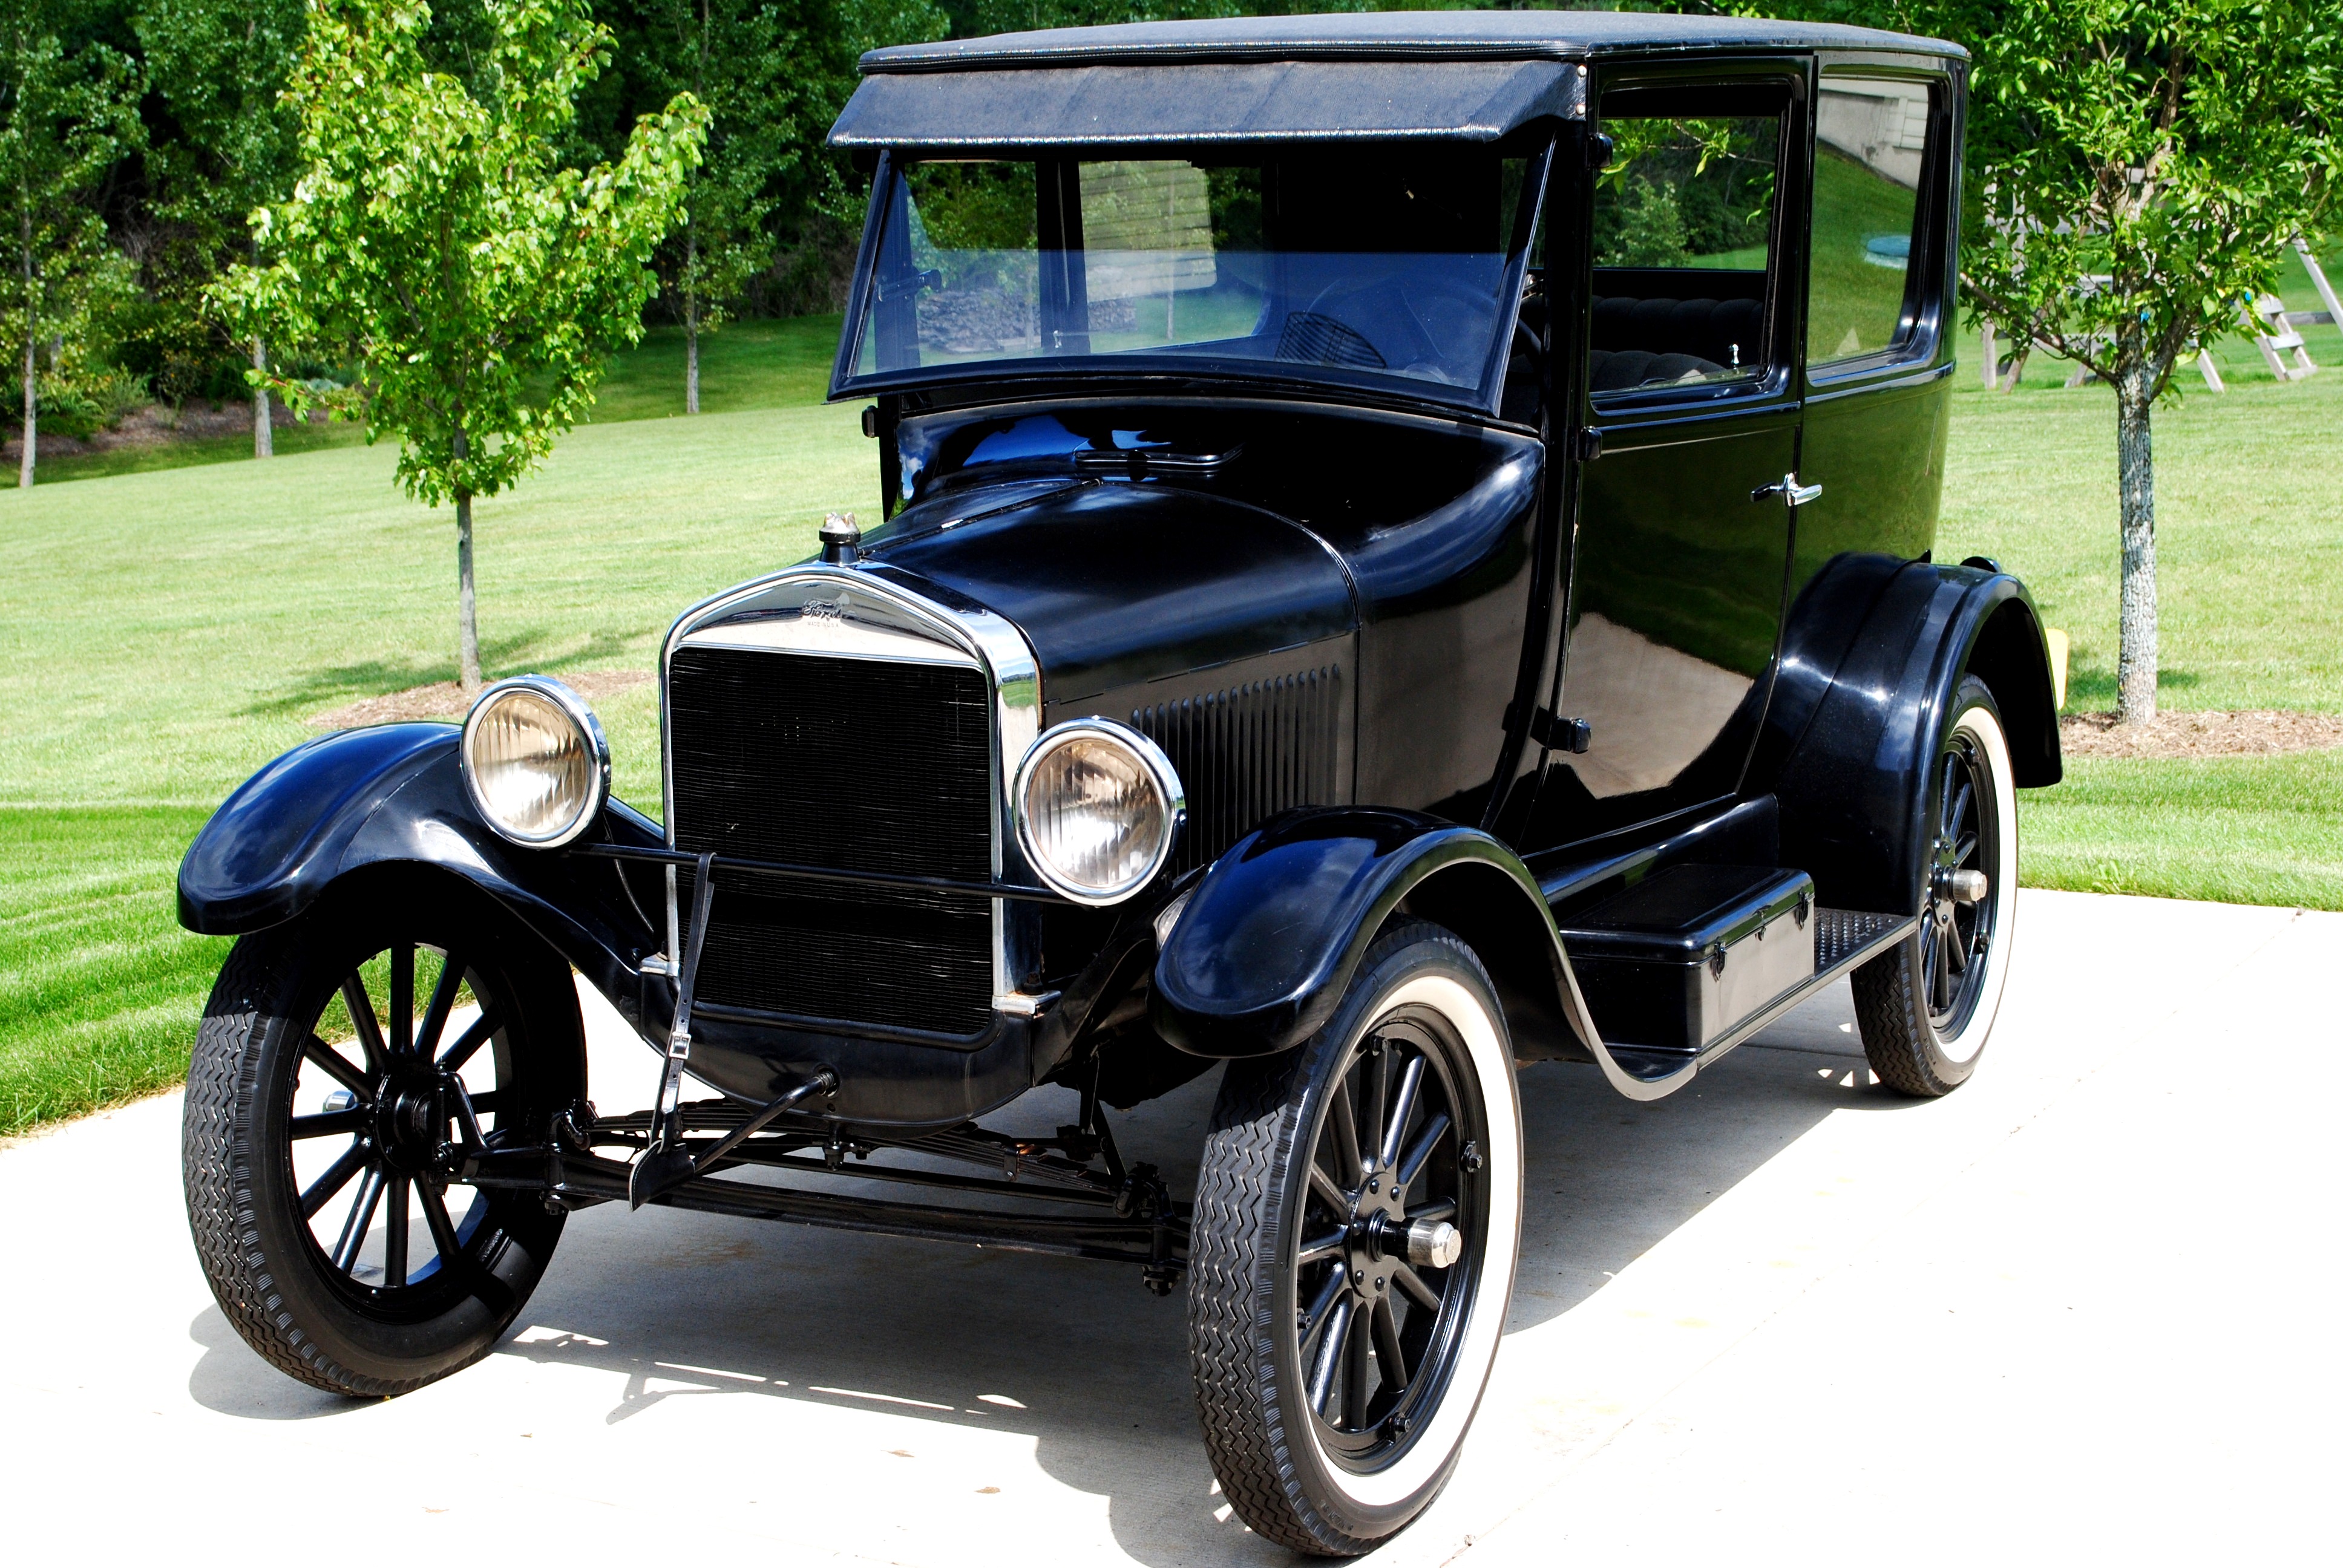 Год выпуска первой машины. Ford model t. Ford model t 1908 и 1927. «Ford model т» в 1908 г.